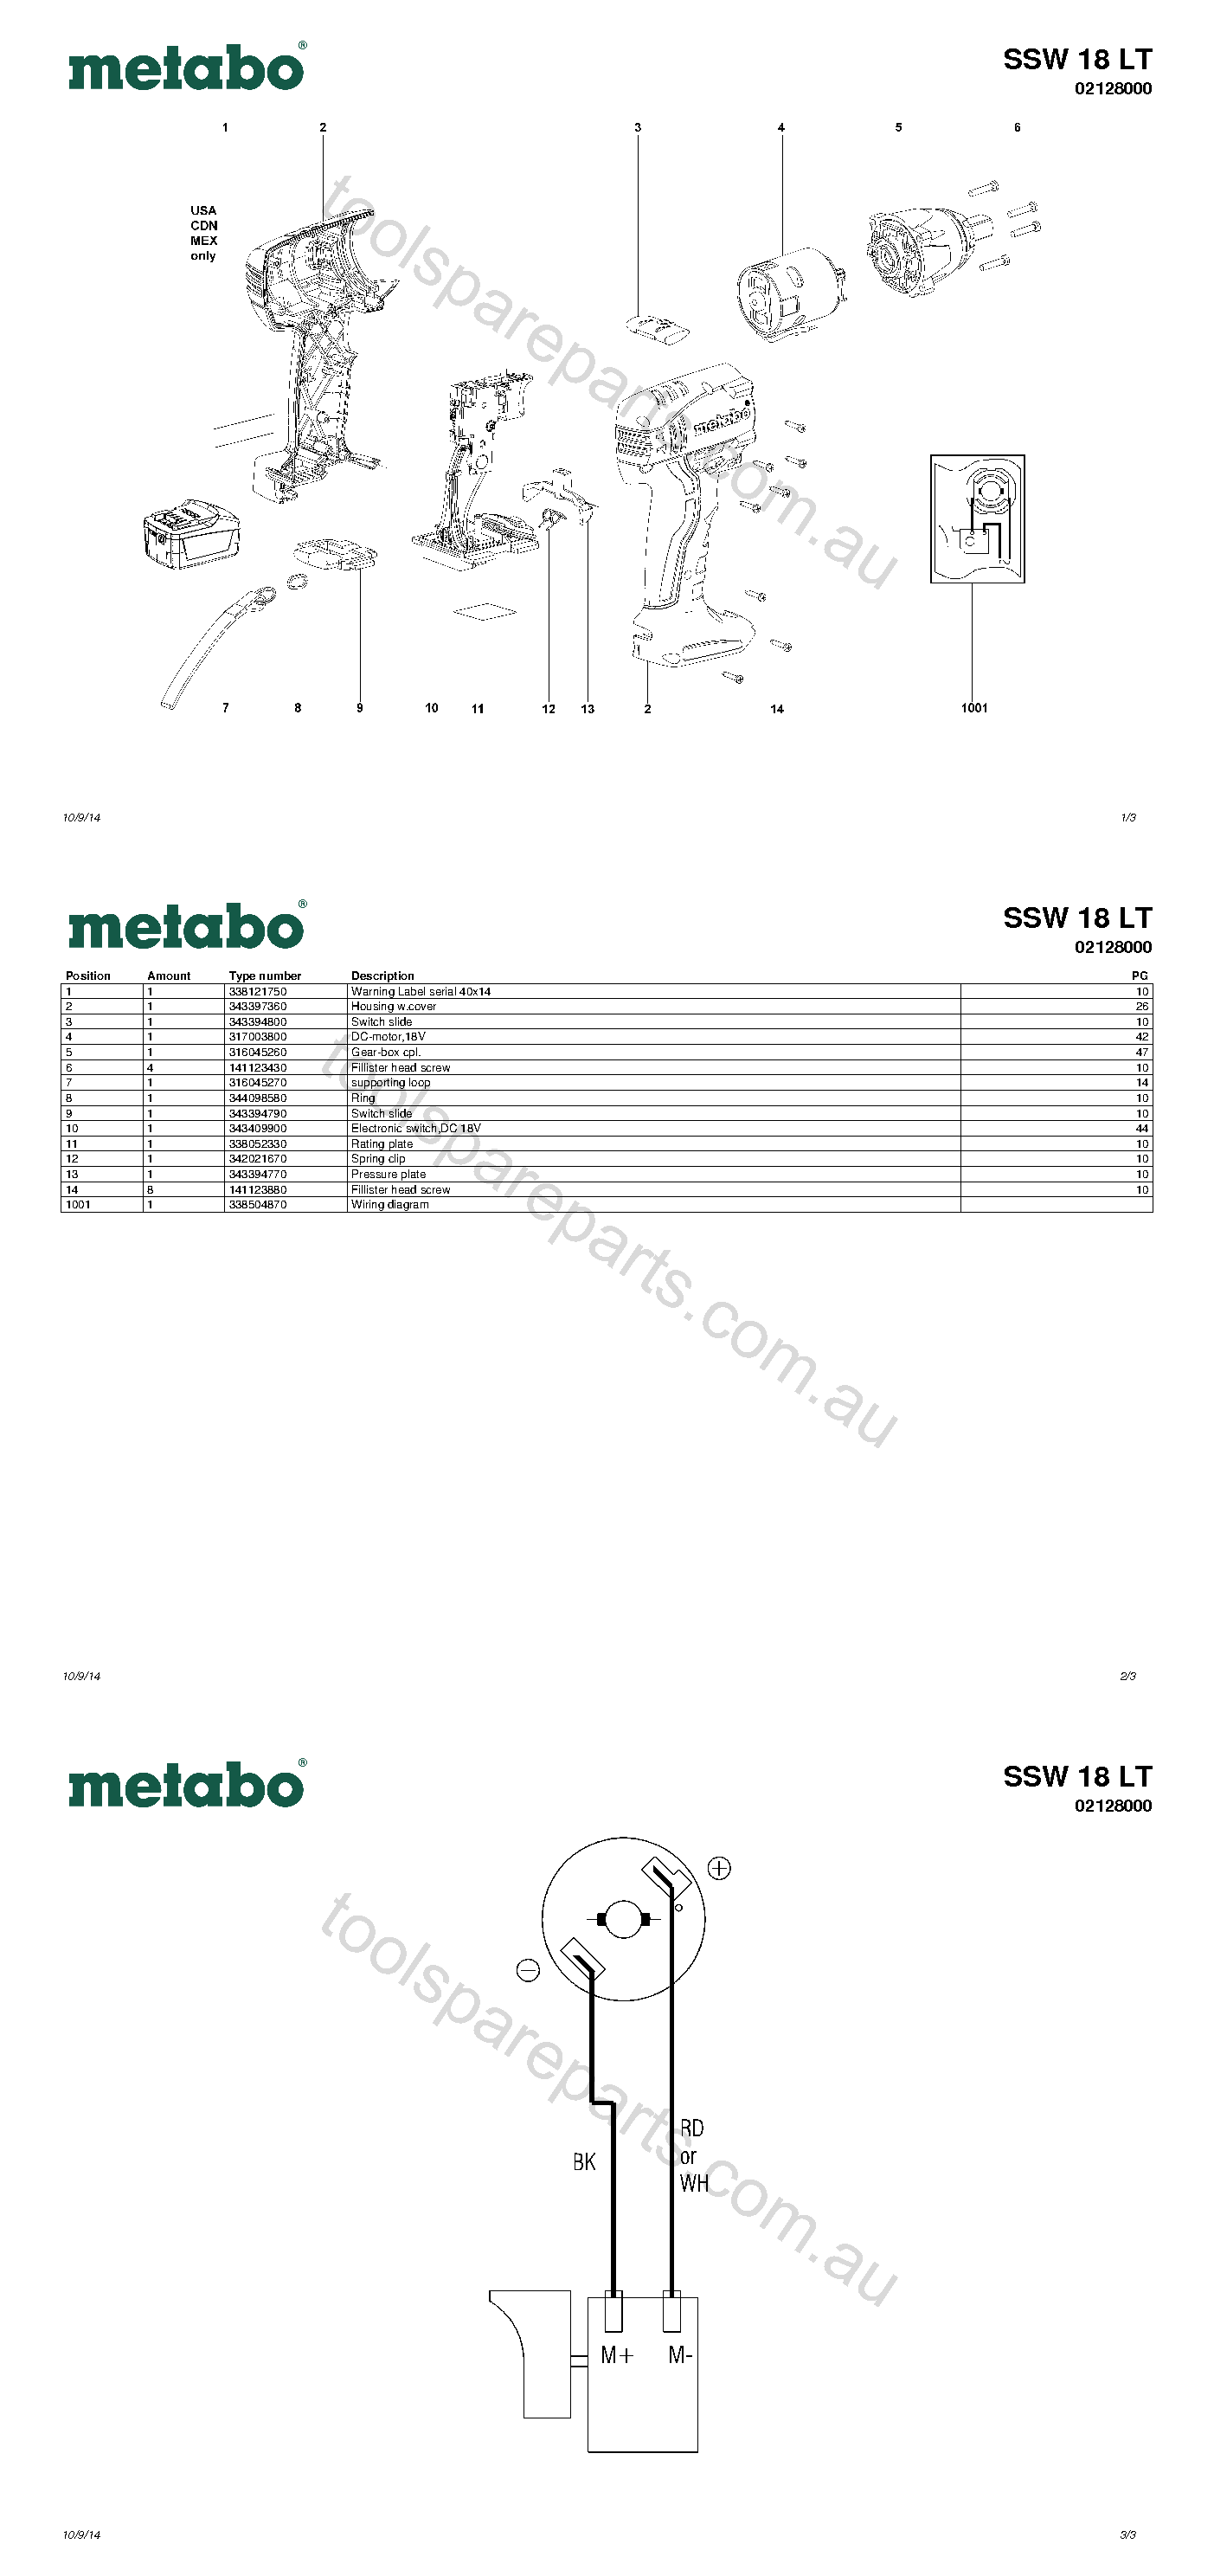 Metabo SSW 18 LT 02128000  Diagram 1